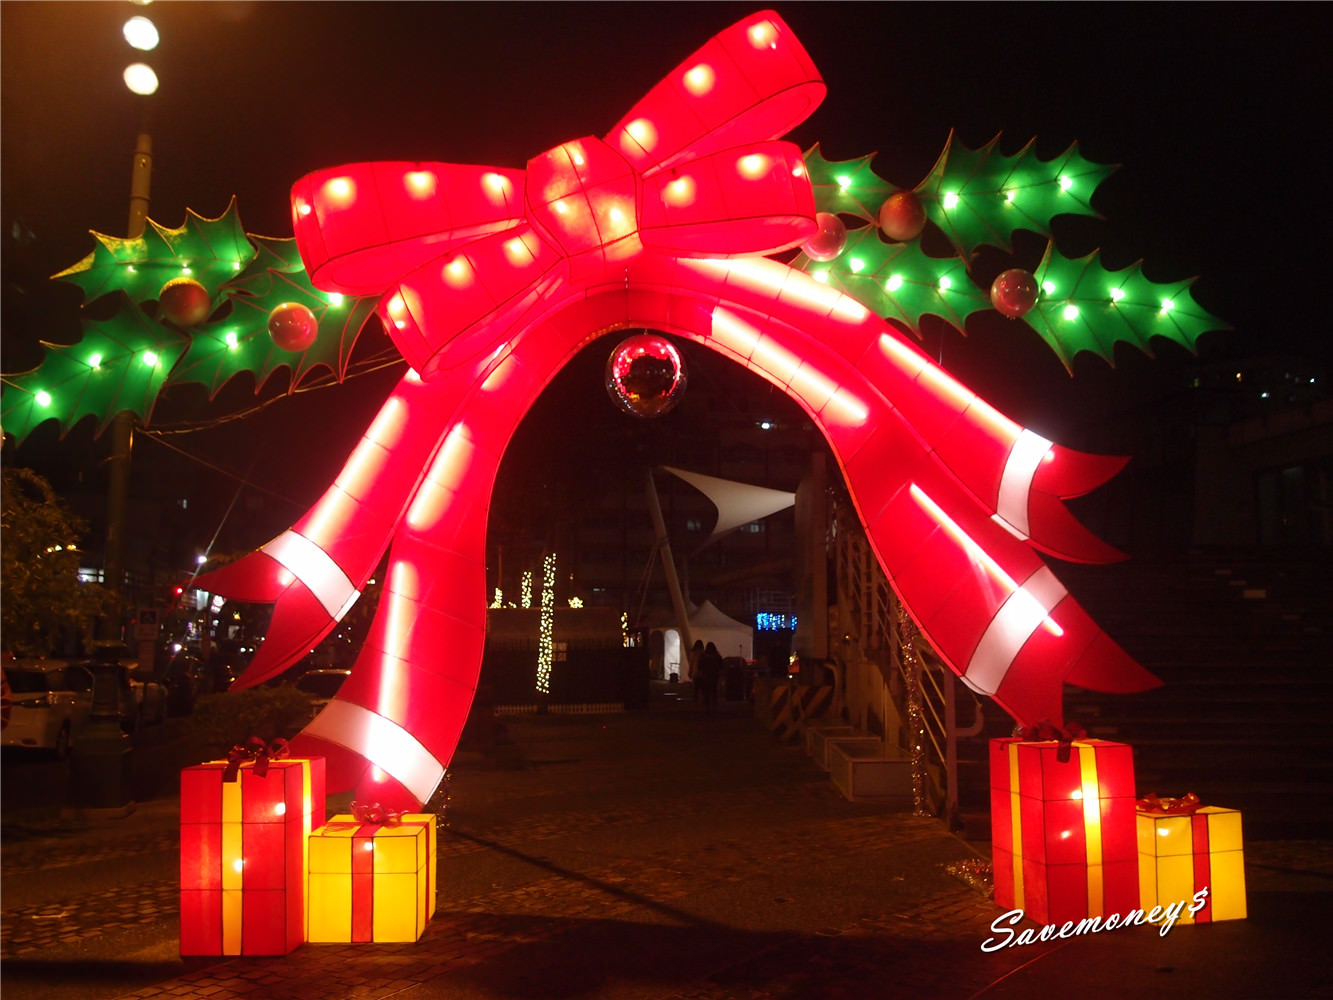 【台中景點】柳川水岸~全國首創水中聖誕樹,還有聖誕市集喔!